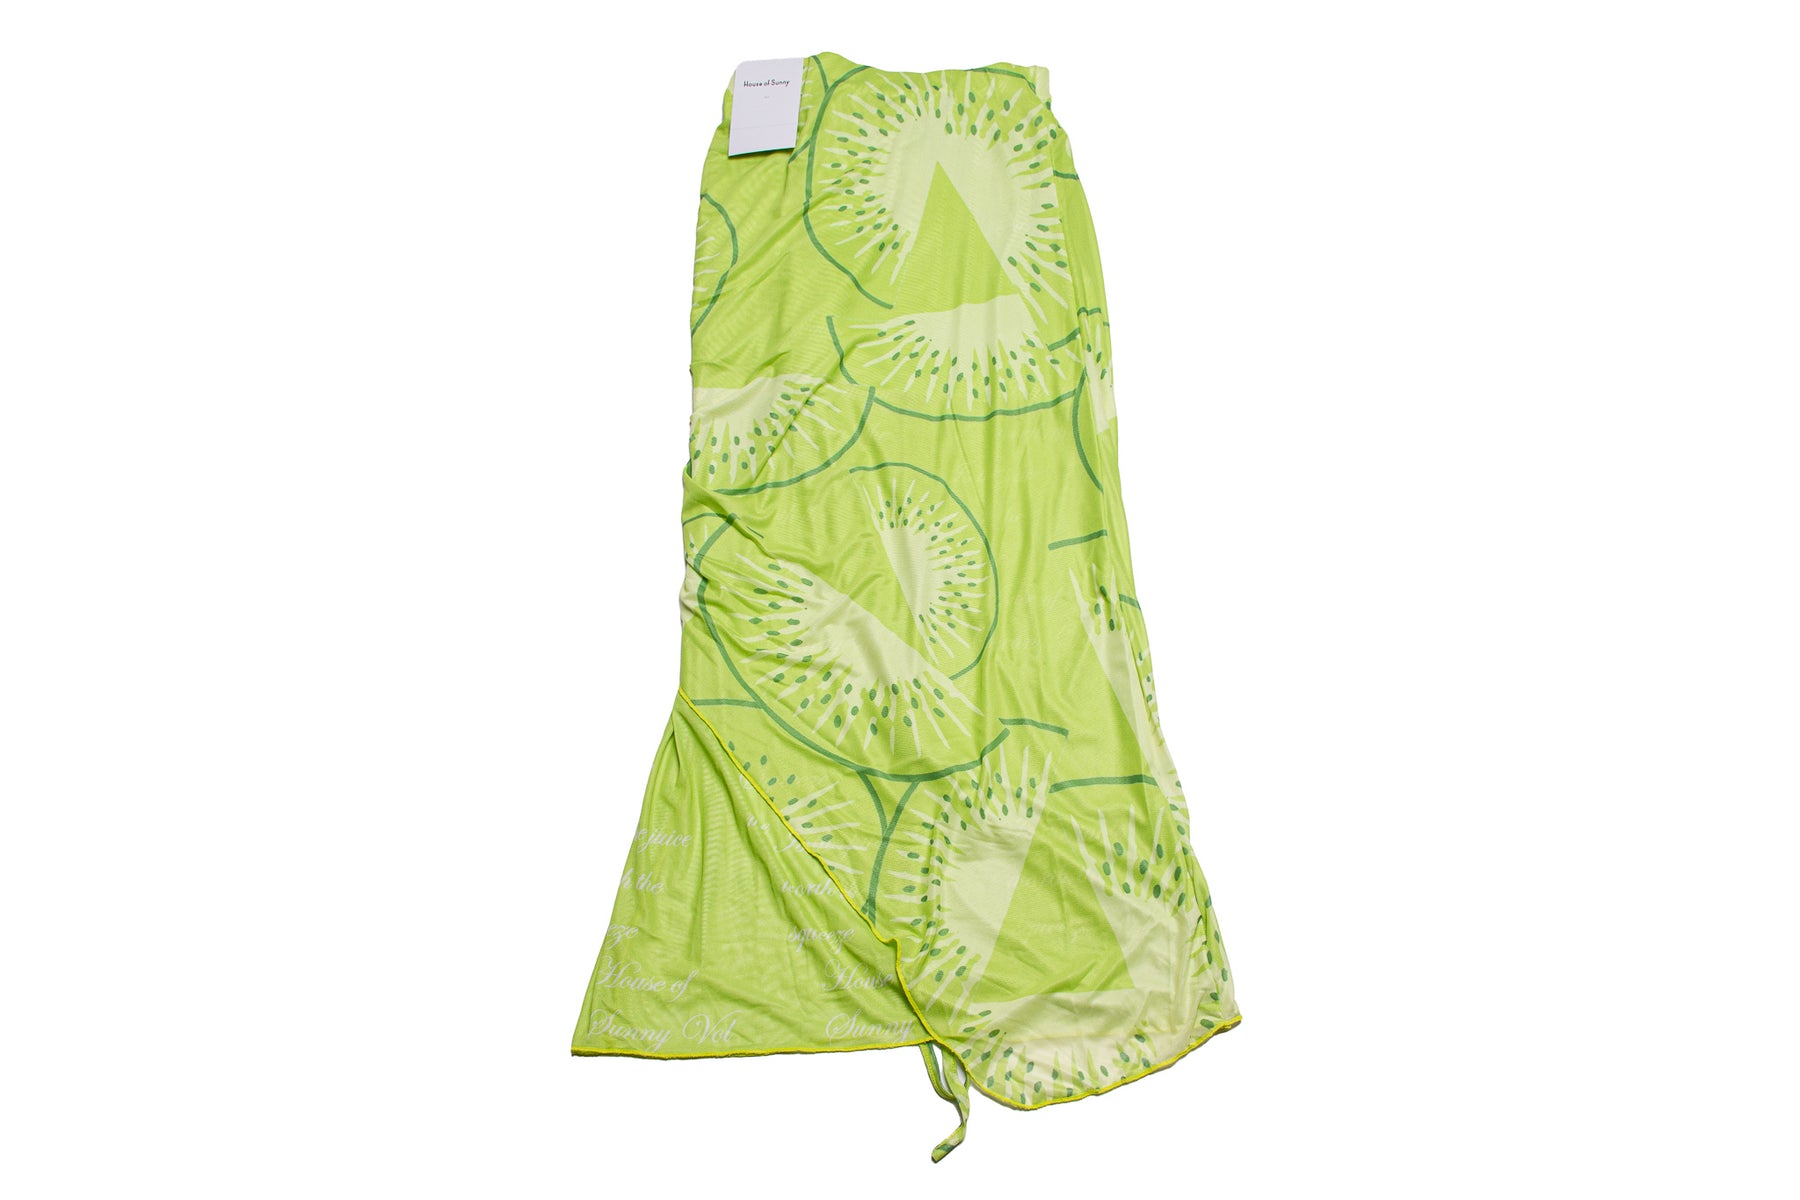 House of Sunny Printed Mesh Skirt "Kiwi"